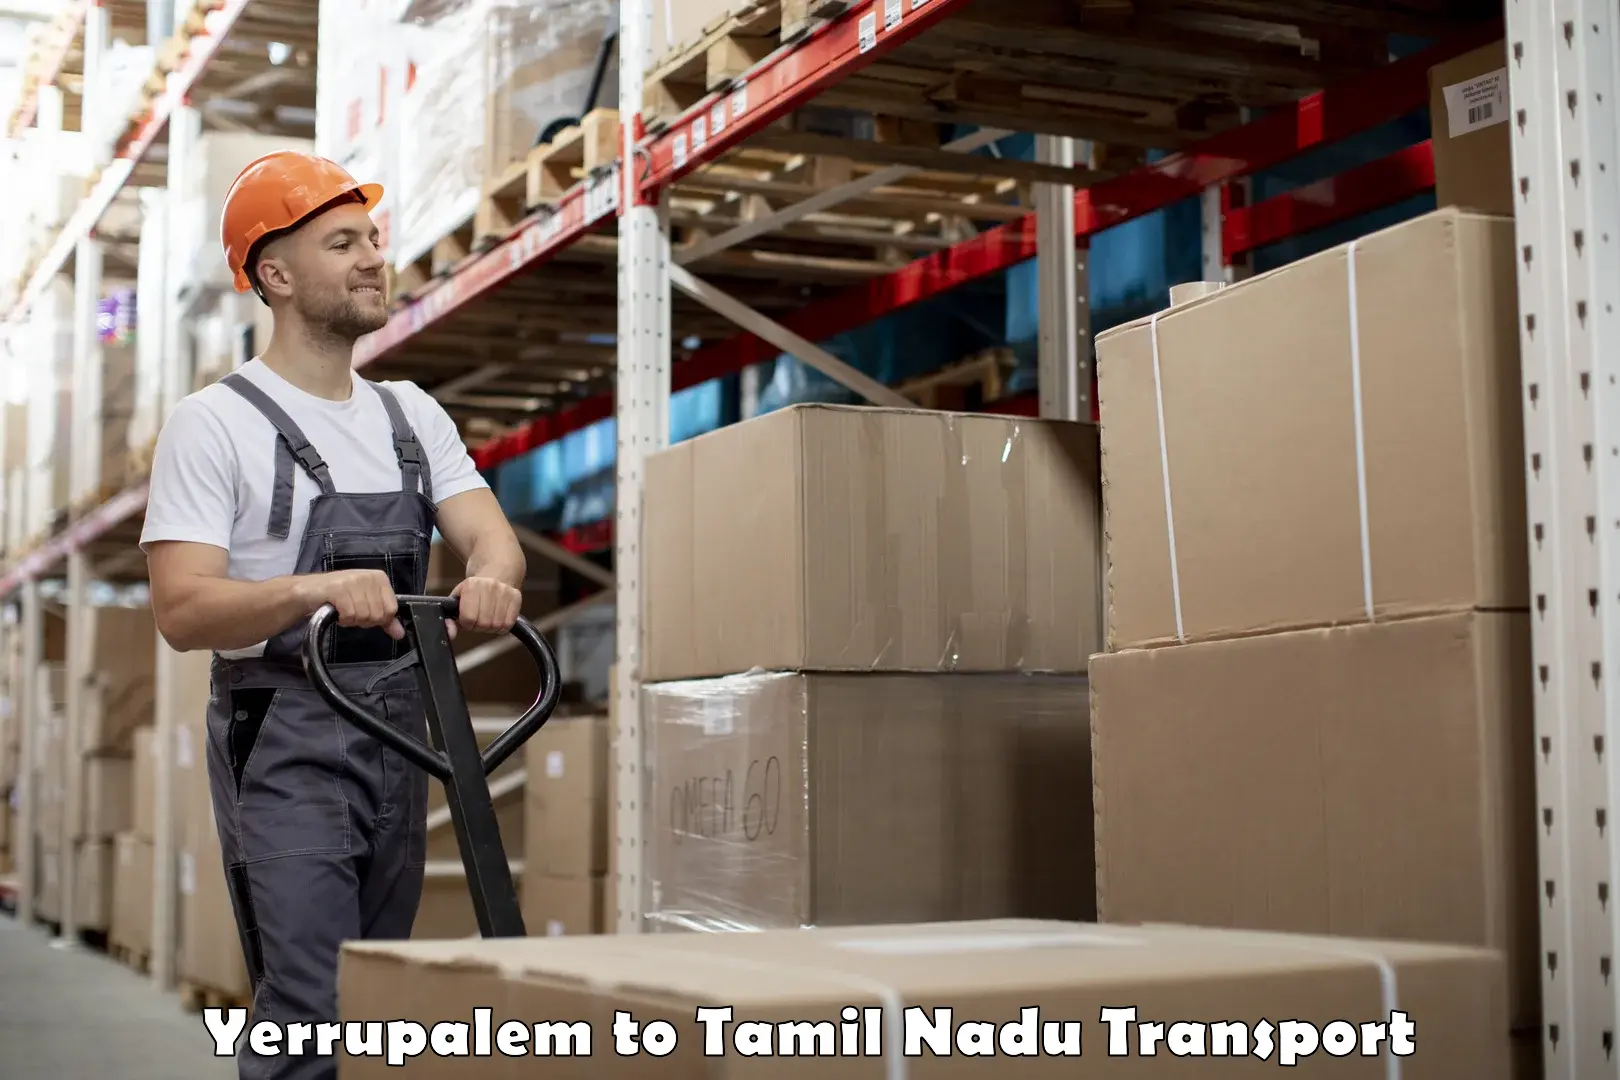 Daily parcel service transport Yerrupalem to Katpadi